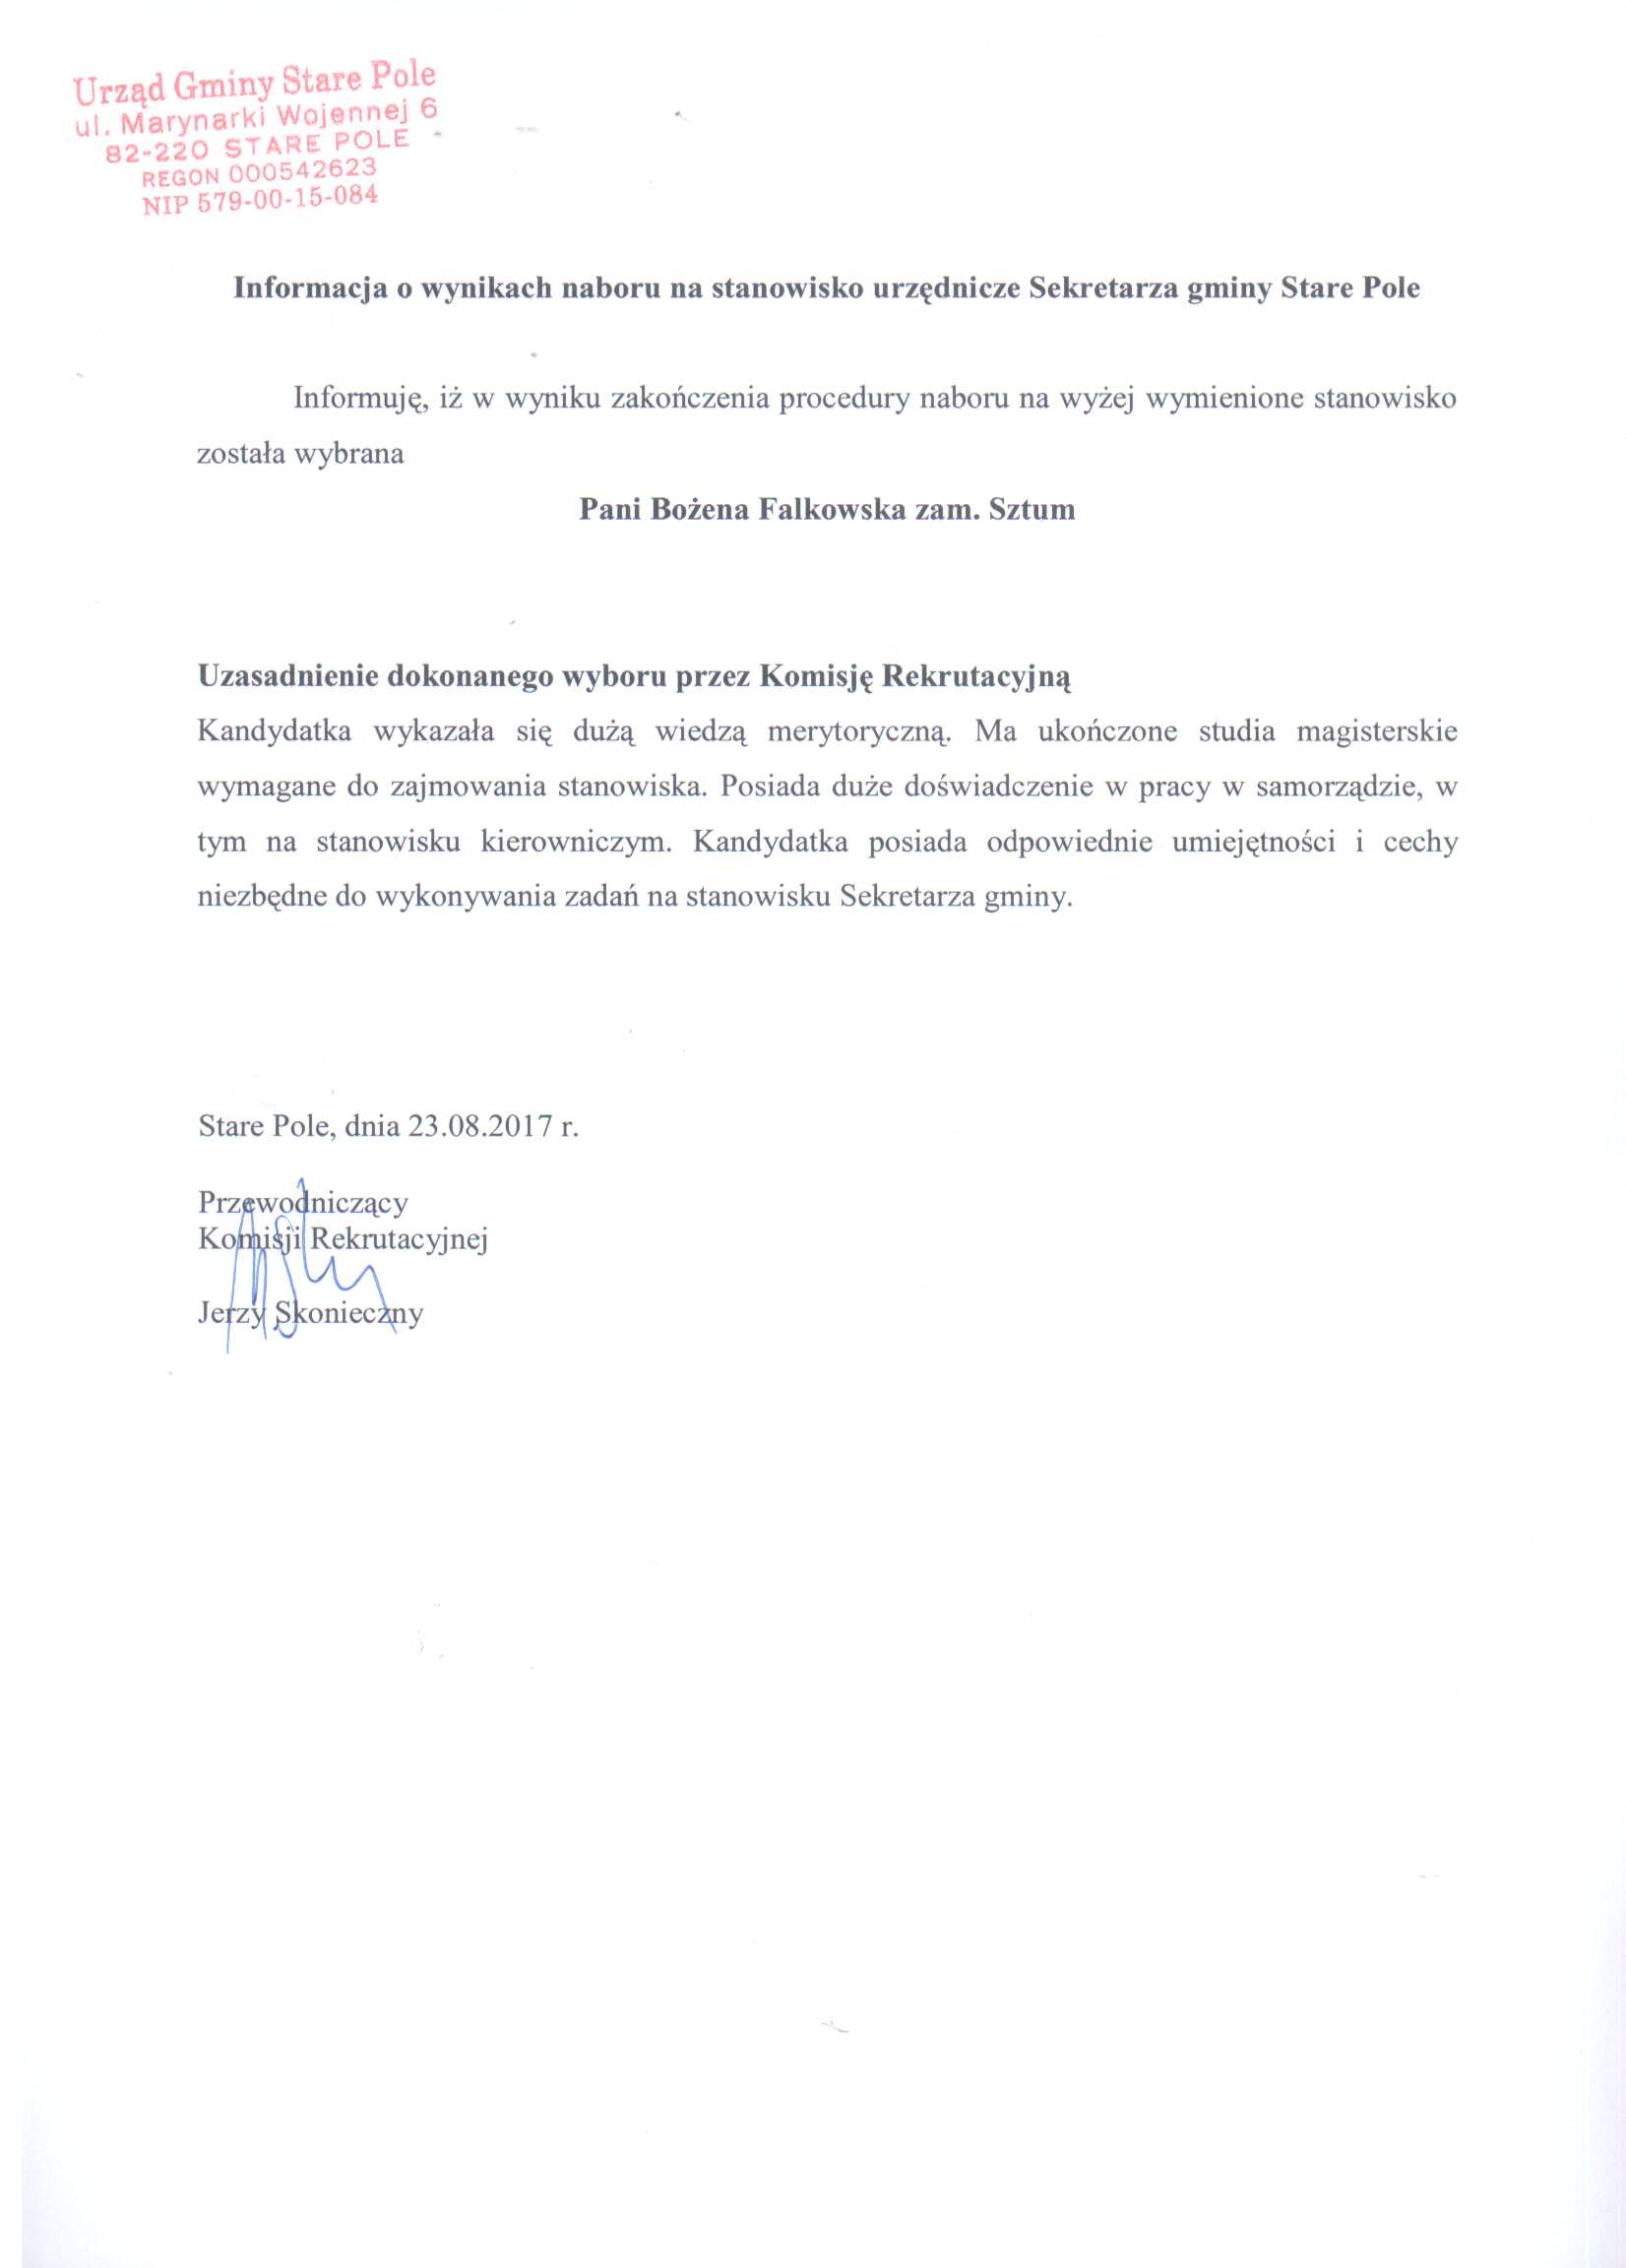 Informacja o wynikach naboru na stanowisko urzędnicze Sekretarza gminy Stare Pole